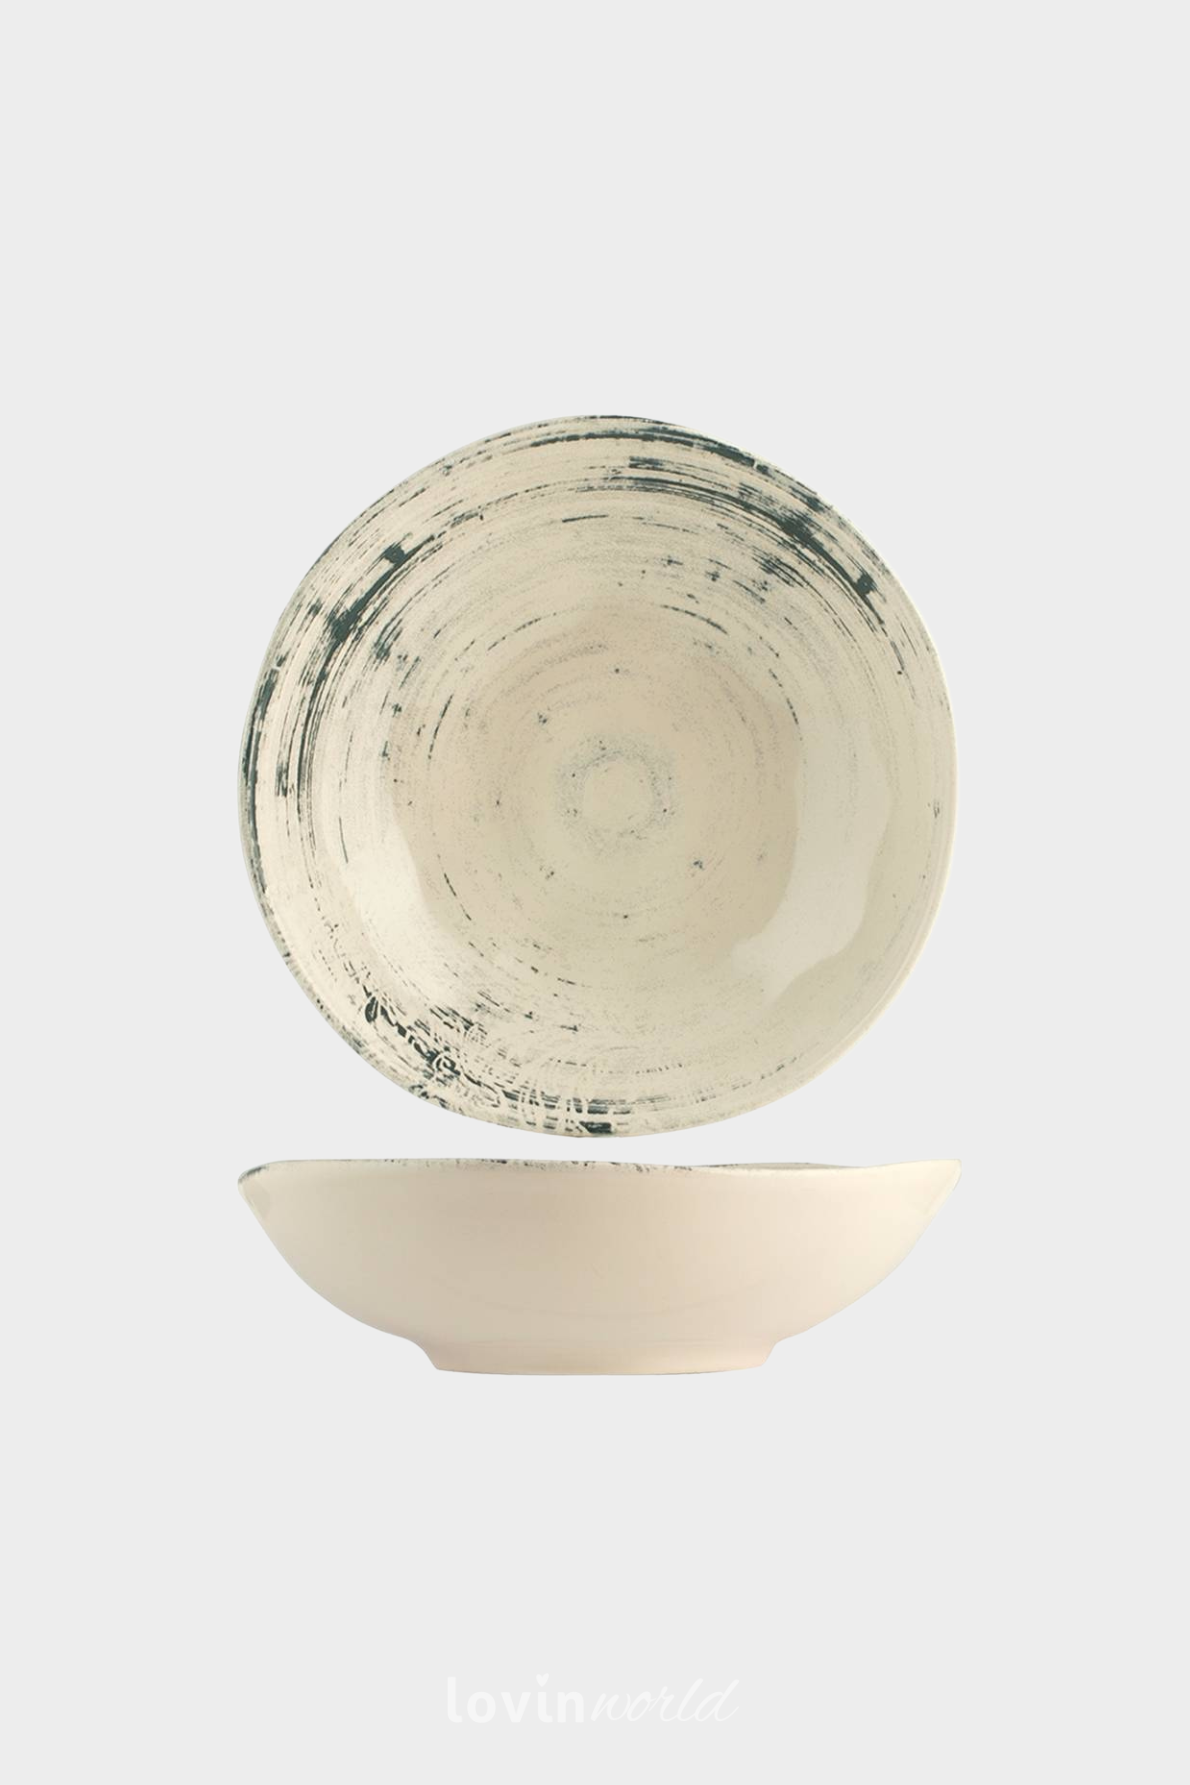 Piatto fondo Silk in stoneware in colore beige 20 cm.-1